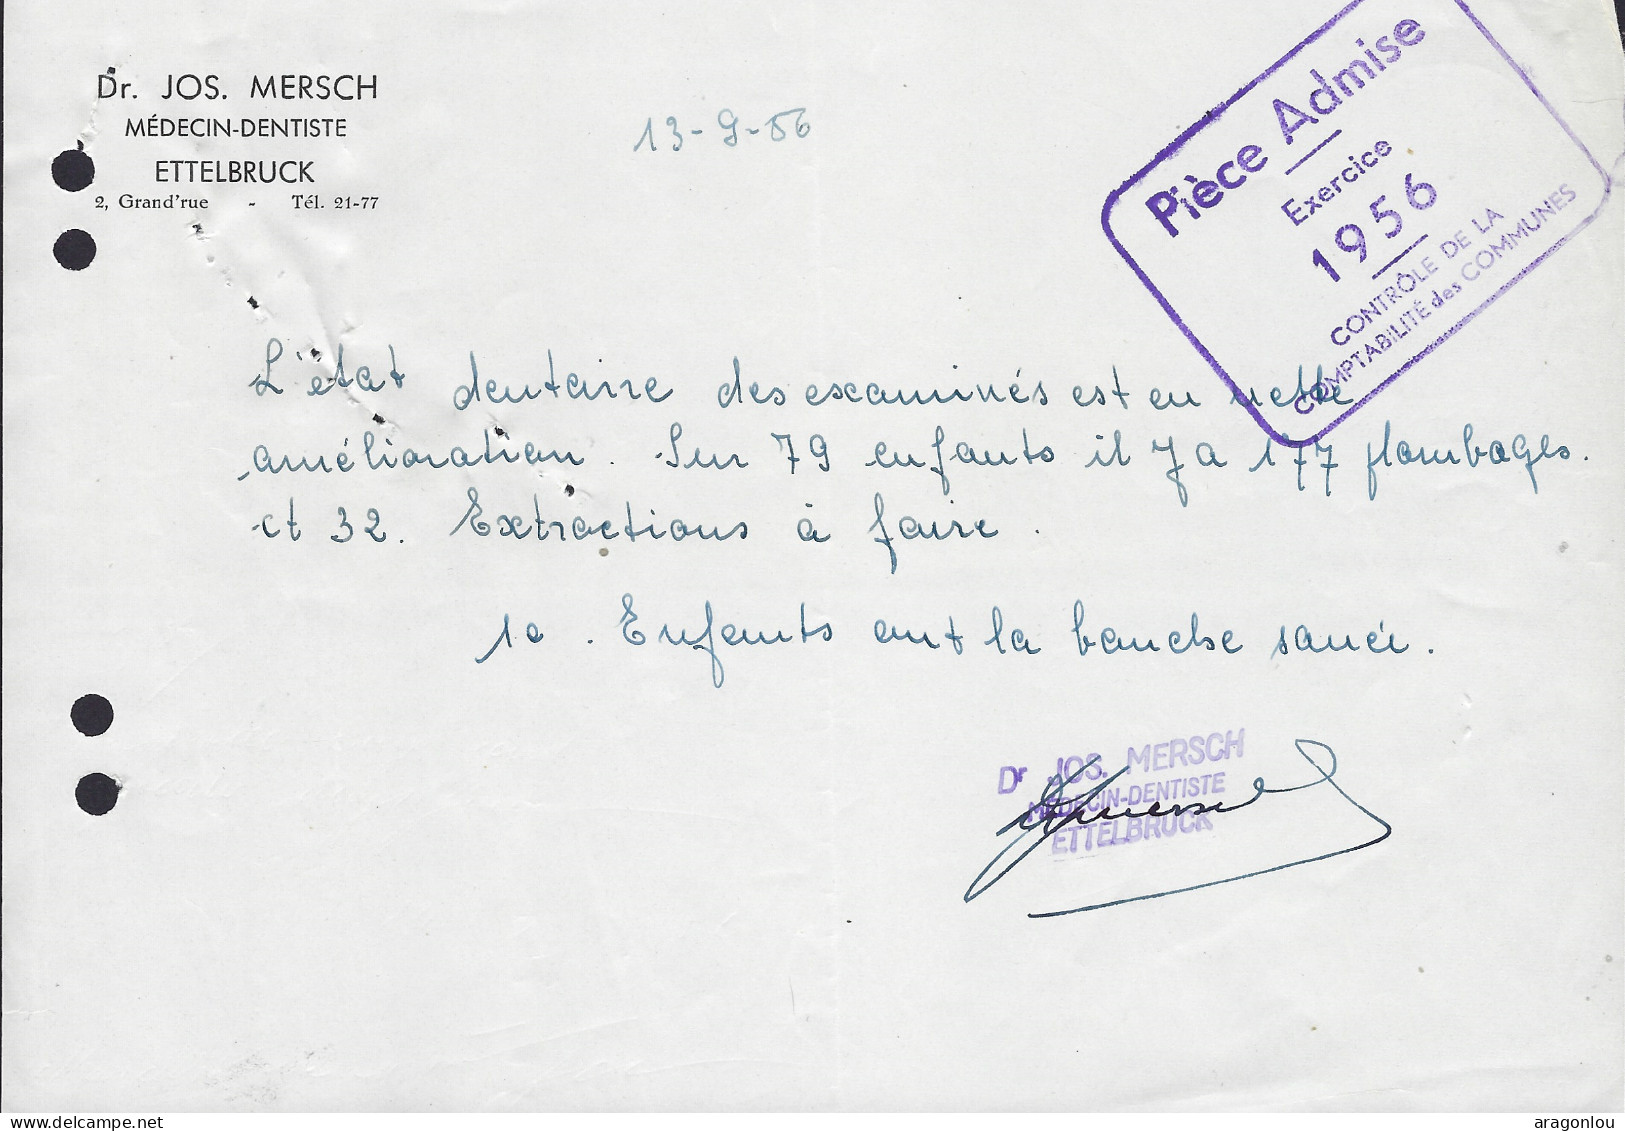 Luxembourg - Luxemburg - Facture -  Dr. JOS. MERSCH , MÉDECIN DENTISTE , ETTELBRUCK   1956 - Luxemburg